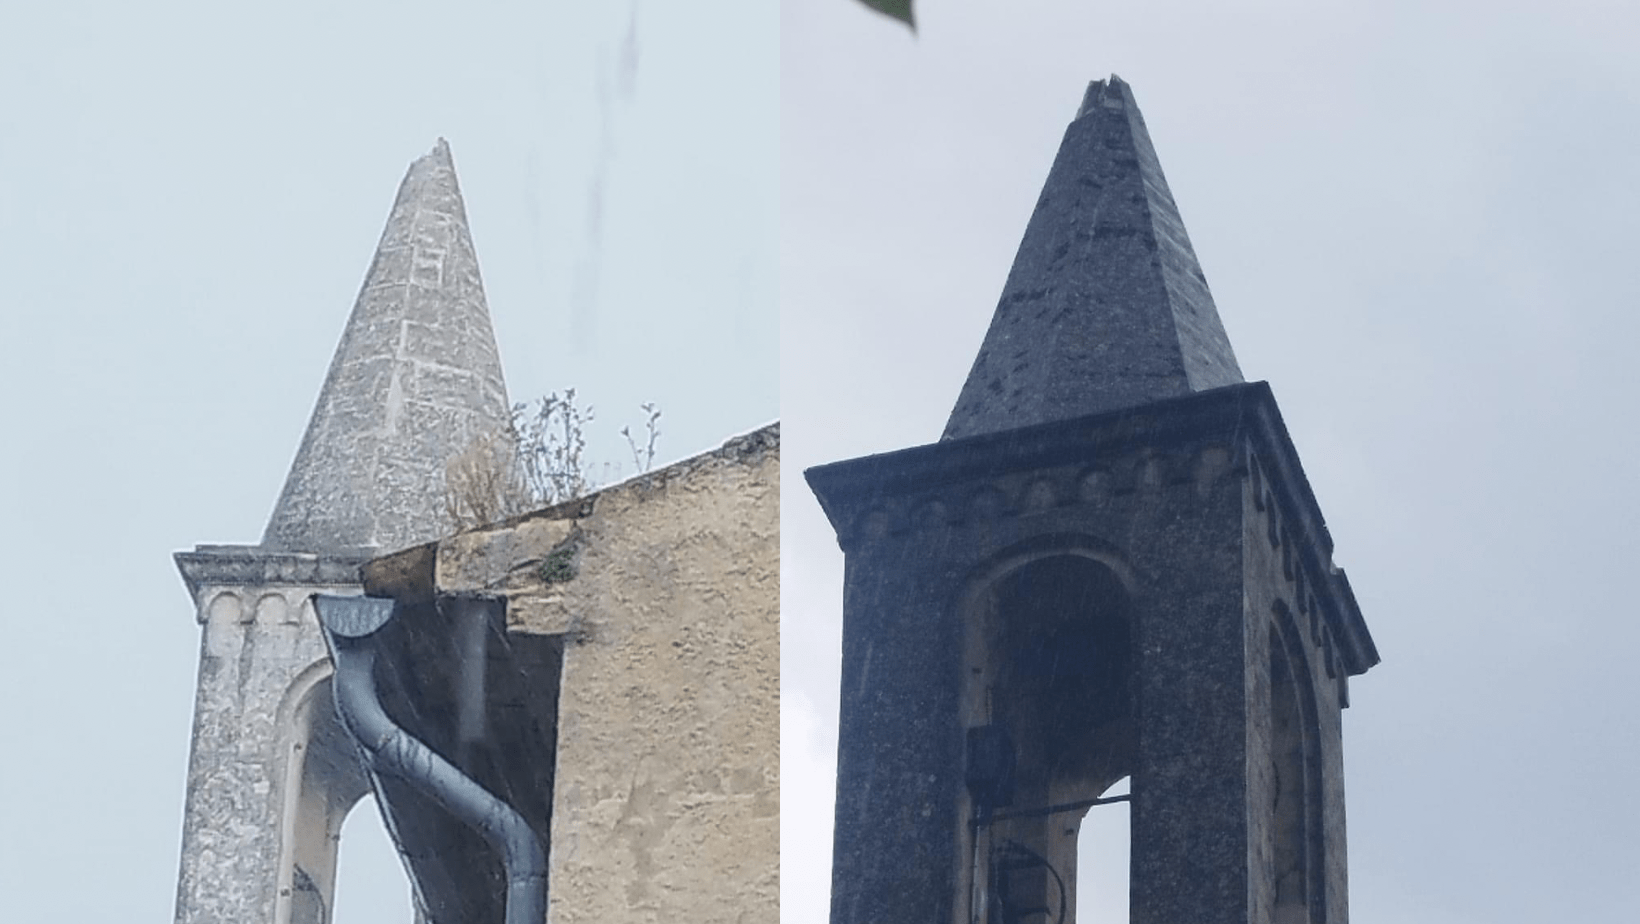 Météo : la foudre s’abat sur le clocher d’une église dans le Gard